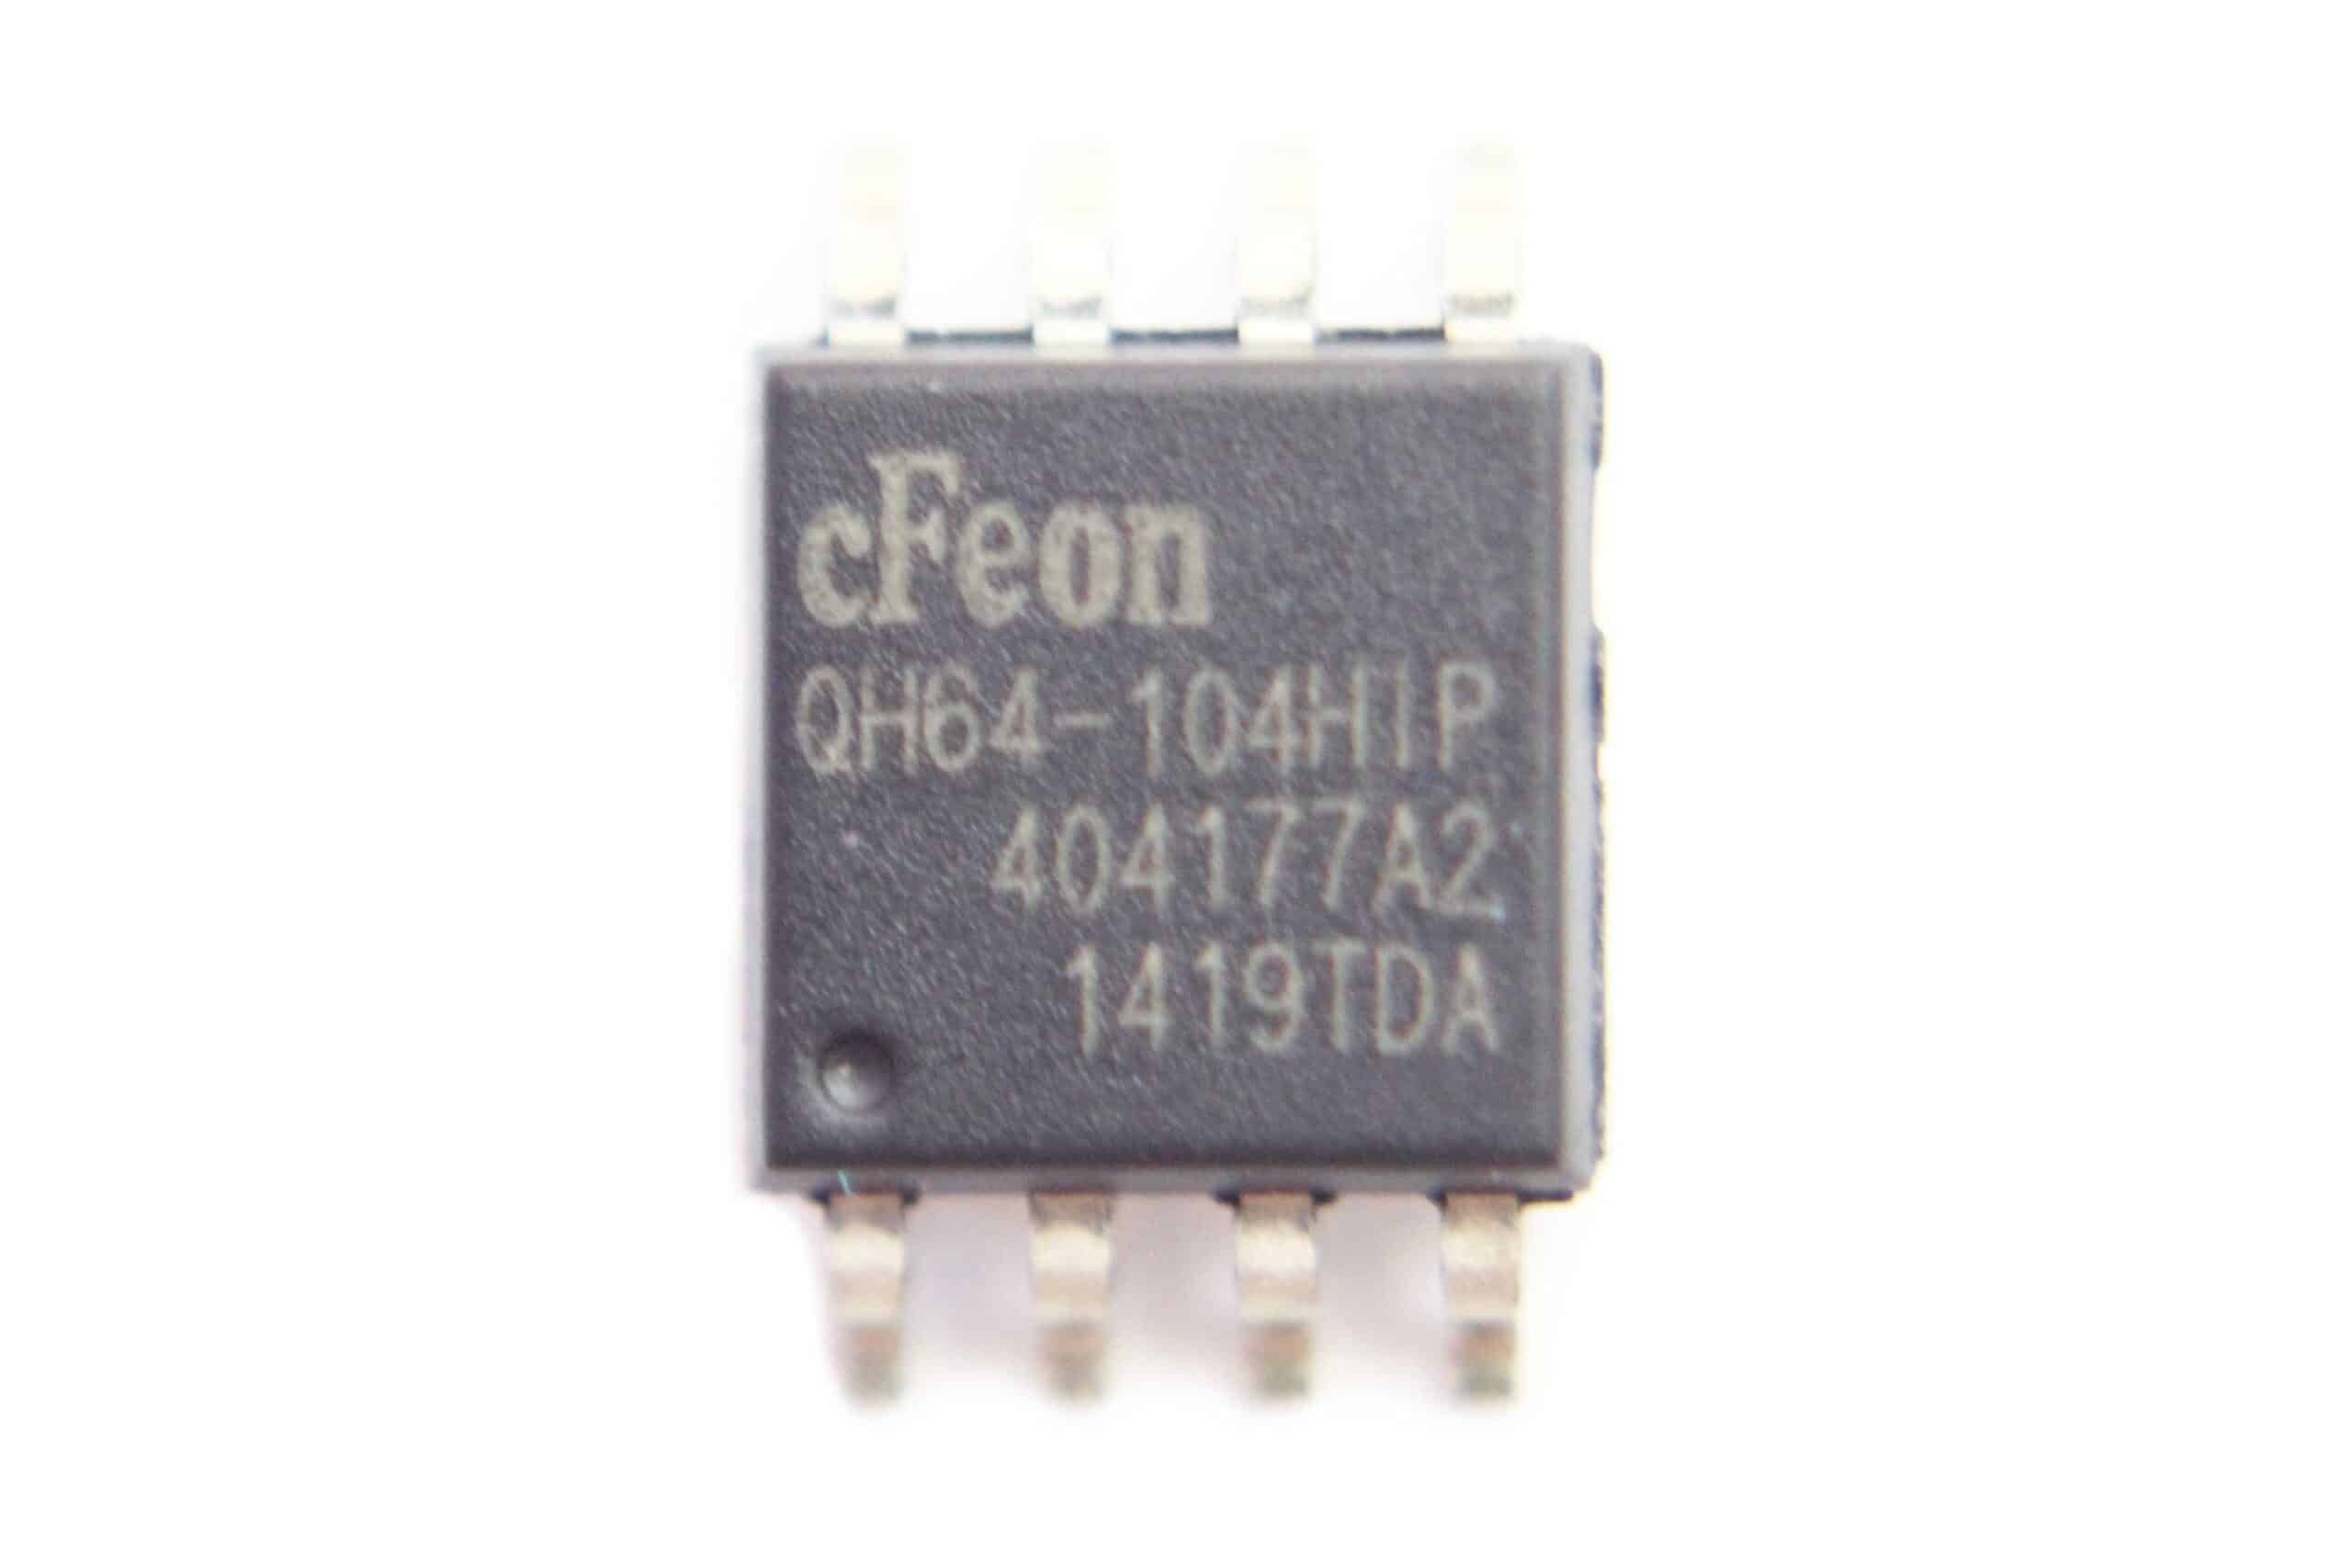 1pcs EN25Q64-104HIP EN25Q64 Q64-104HIP cFeon SOP8 Megabit Serial Flash Memory